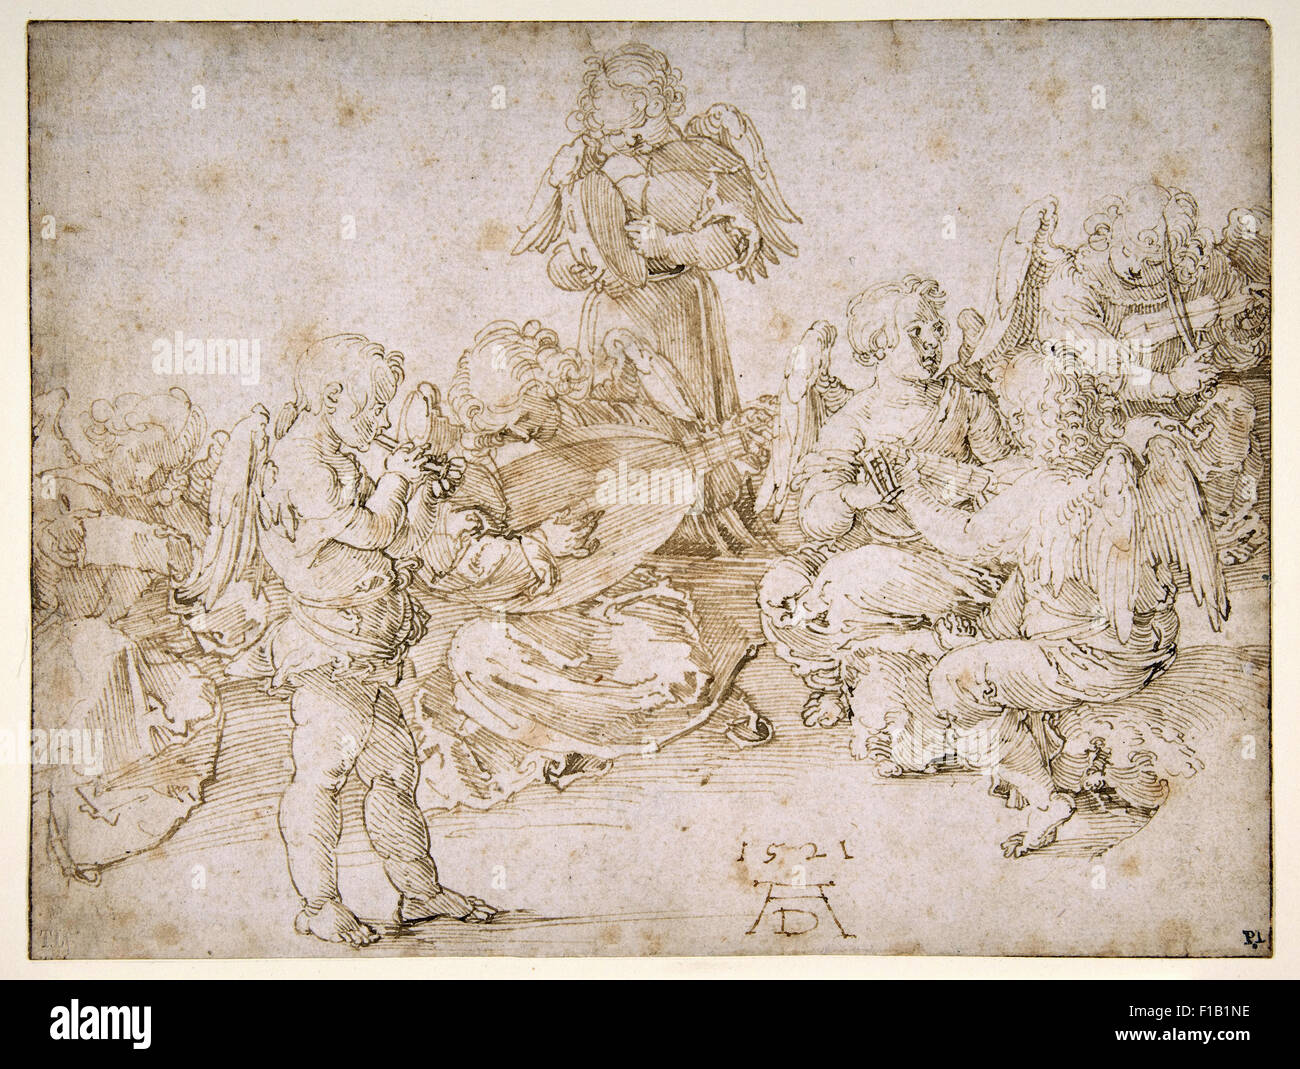 Albrecht Dürer - Music Making Angels Stock Photo